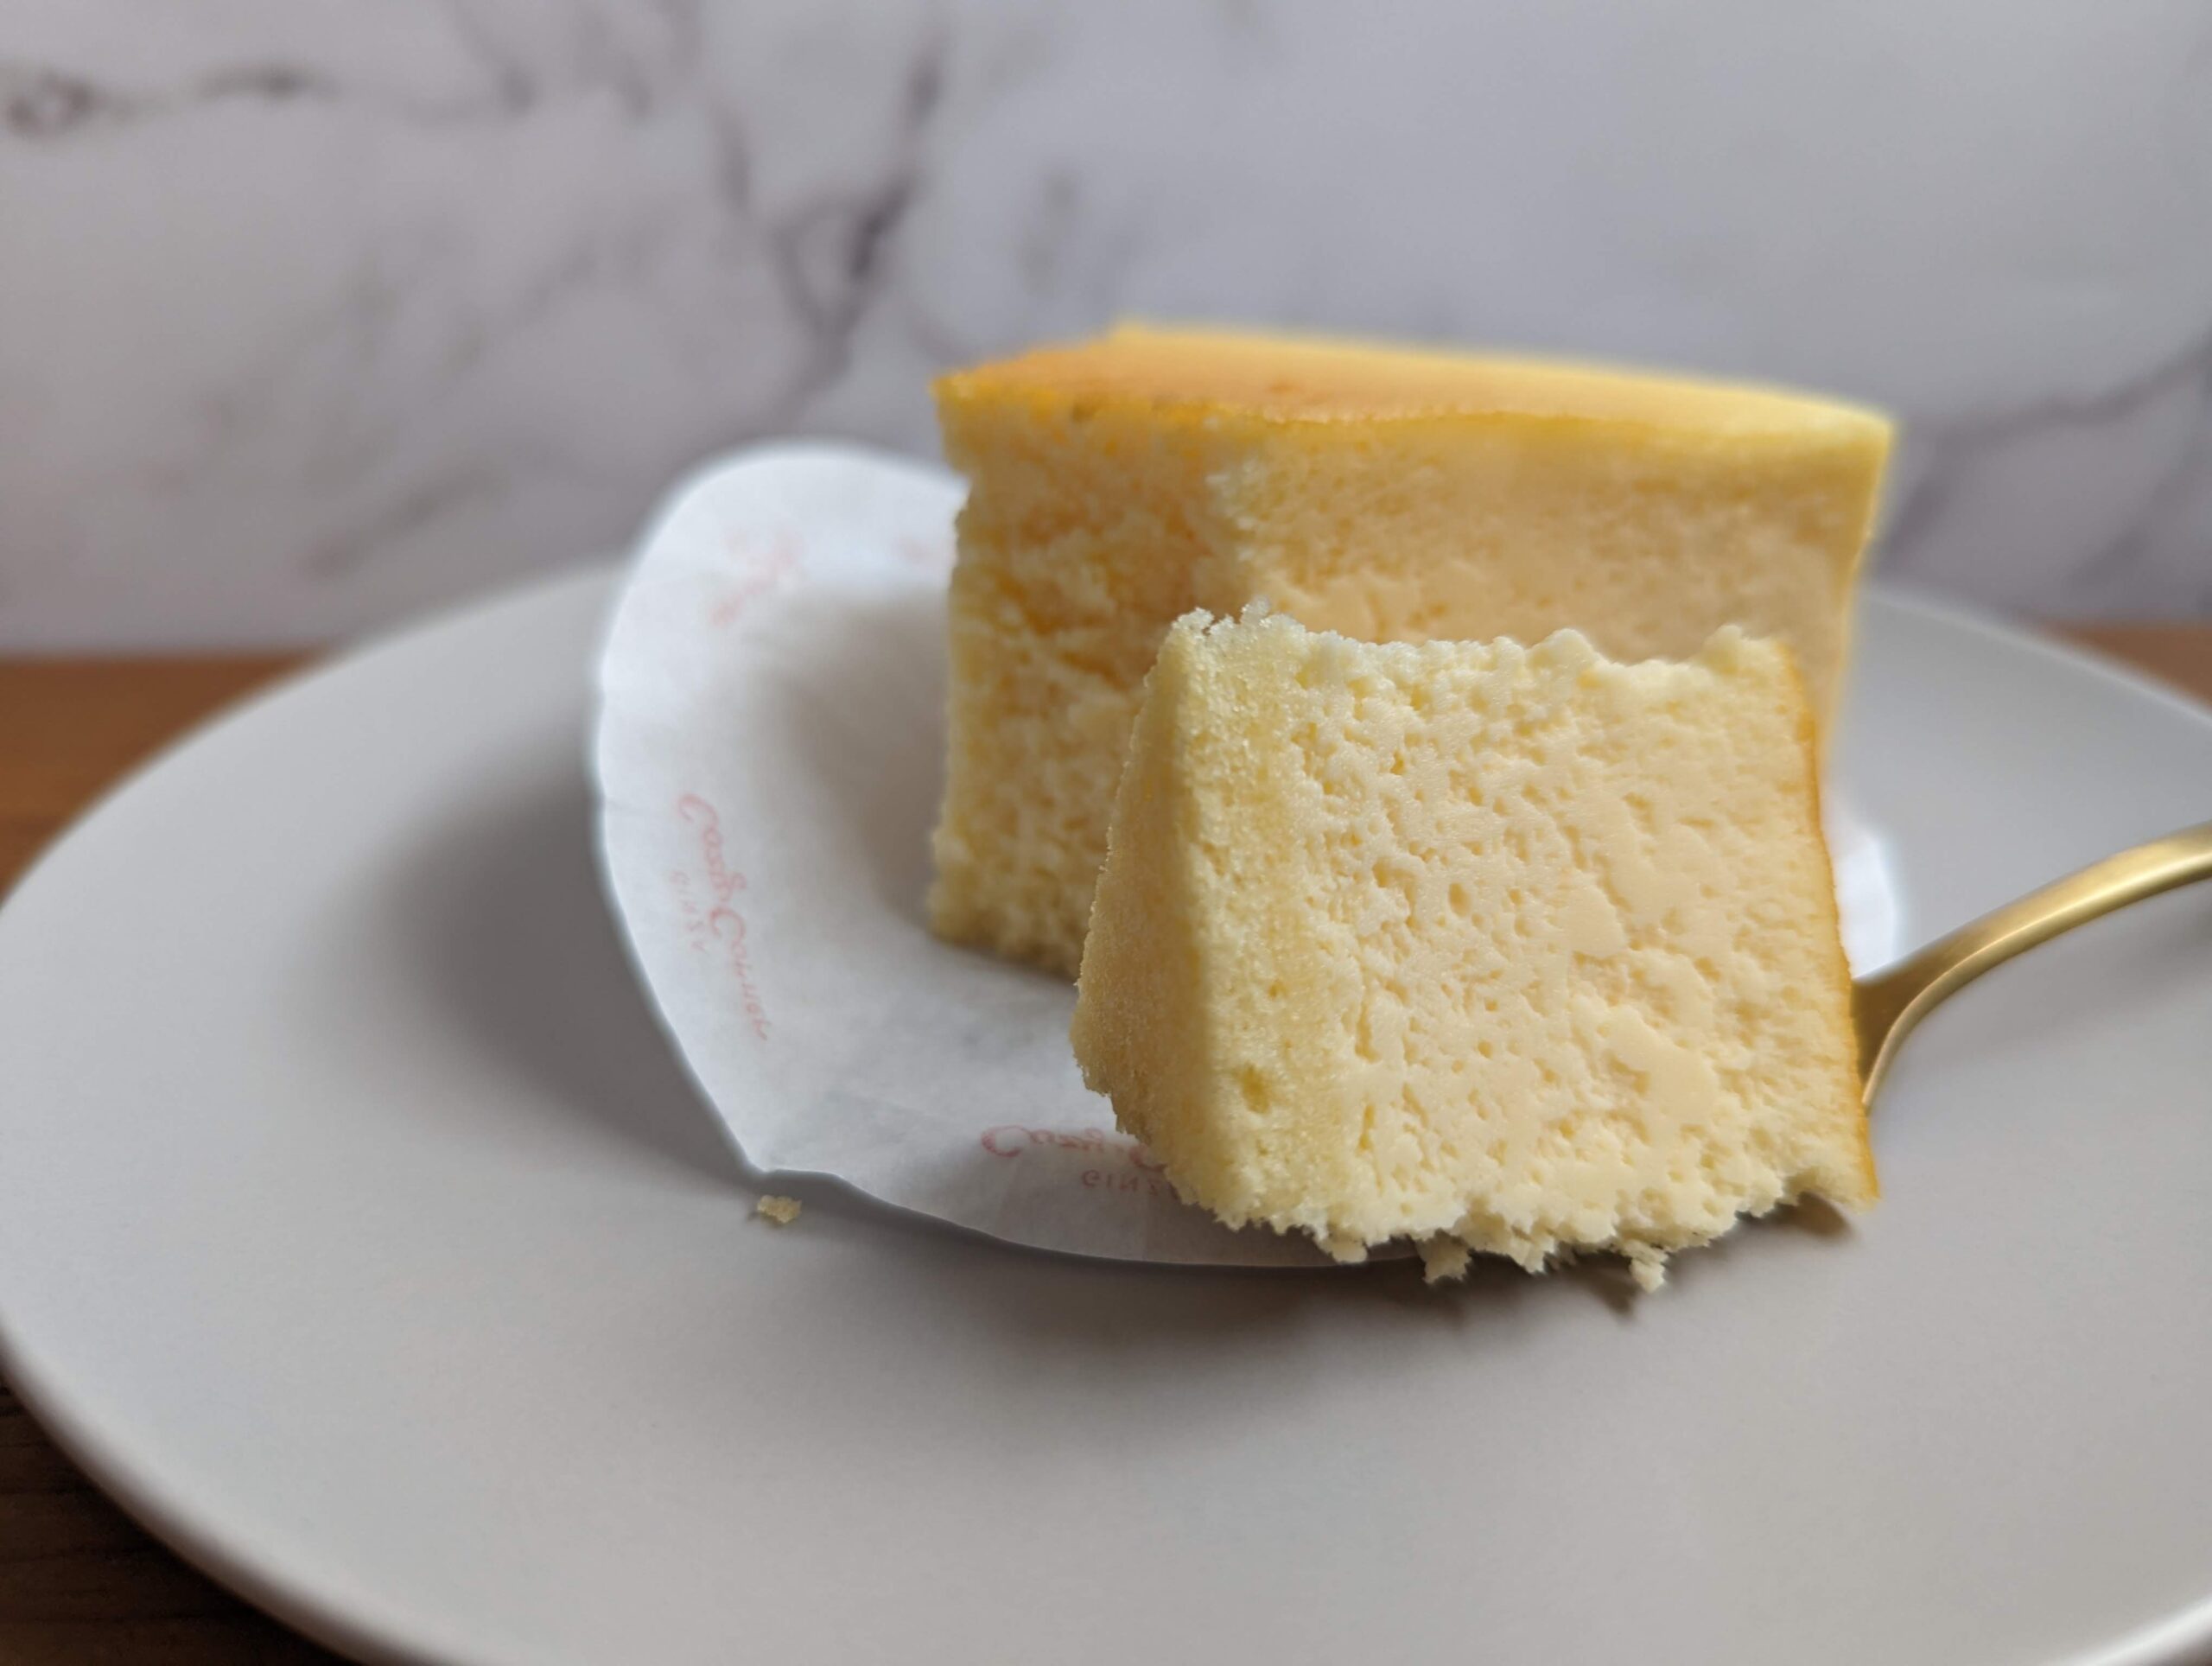 銀座コージーコーナーの「チーズケーキ」の写真 (8)